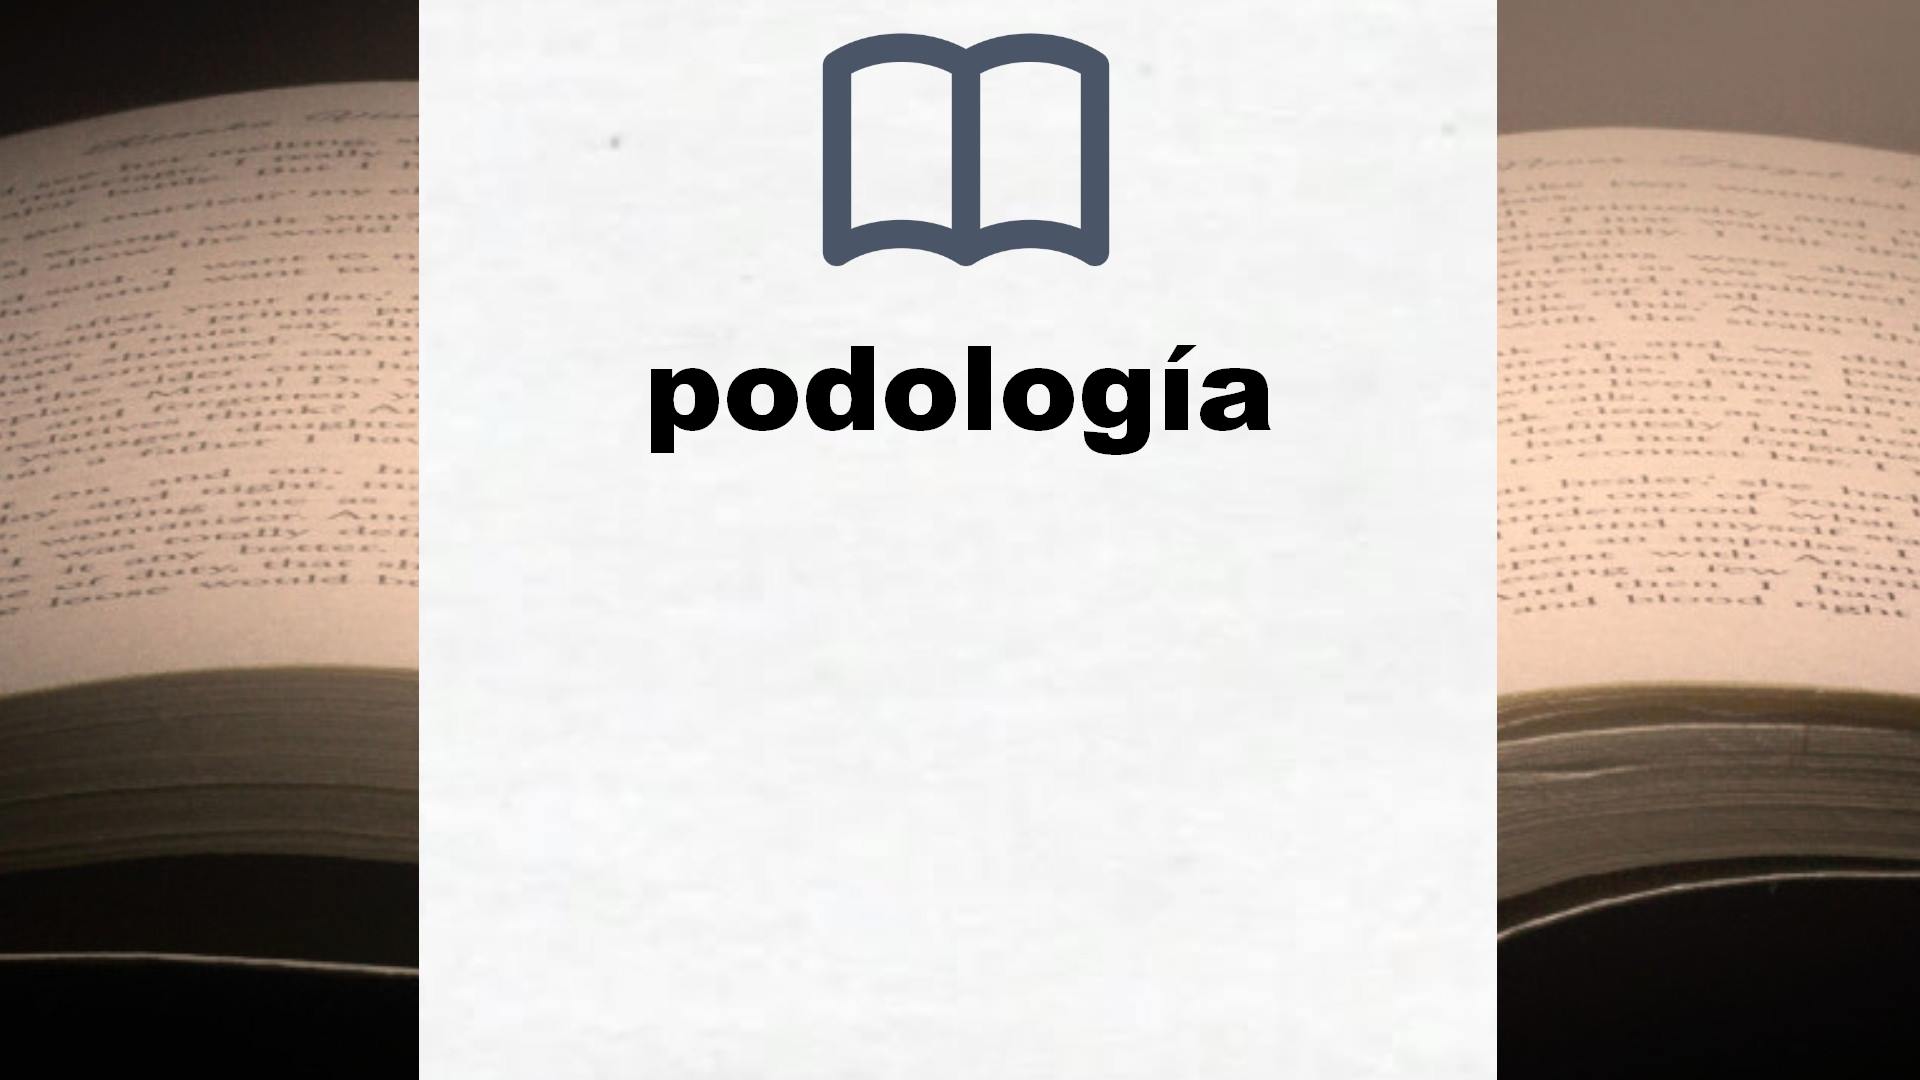 Libros sobre podología